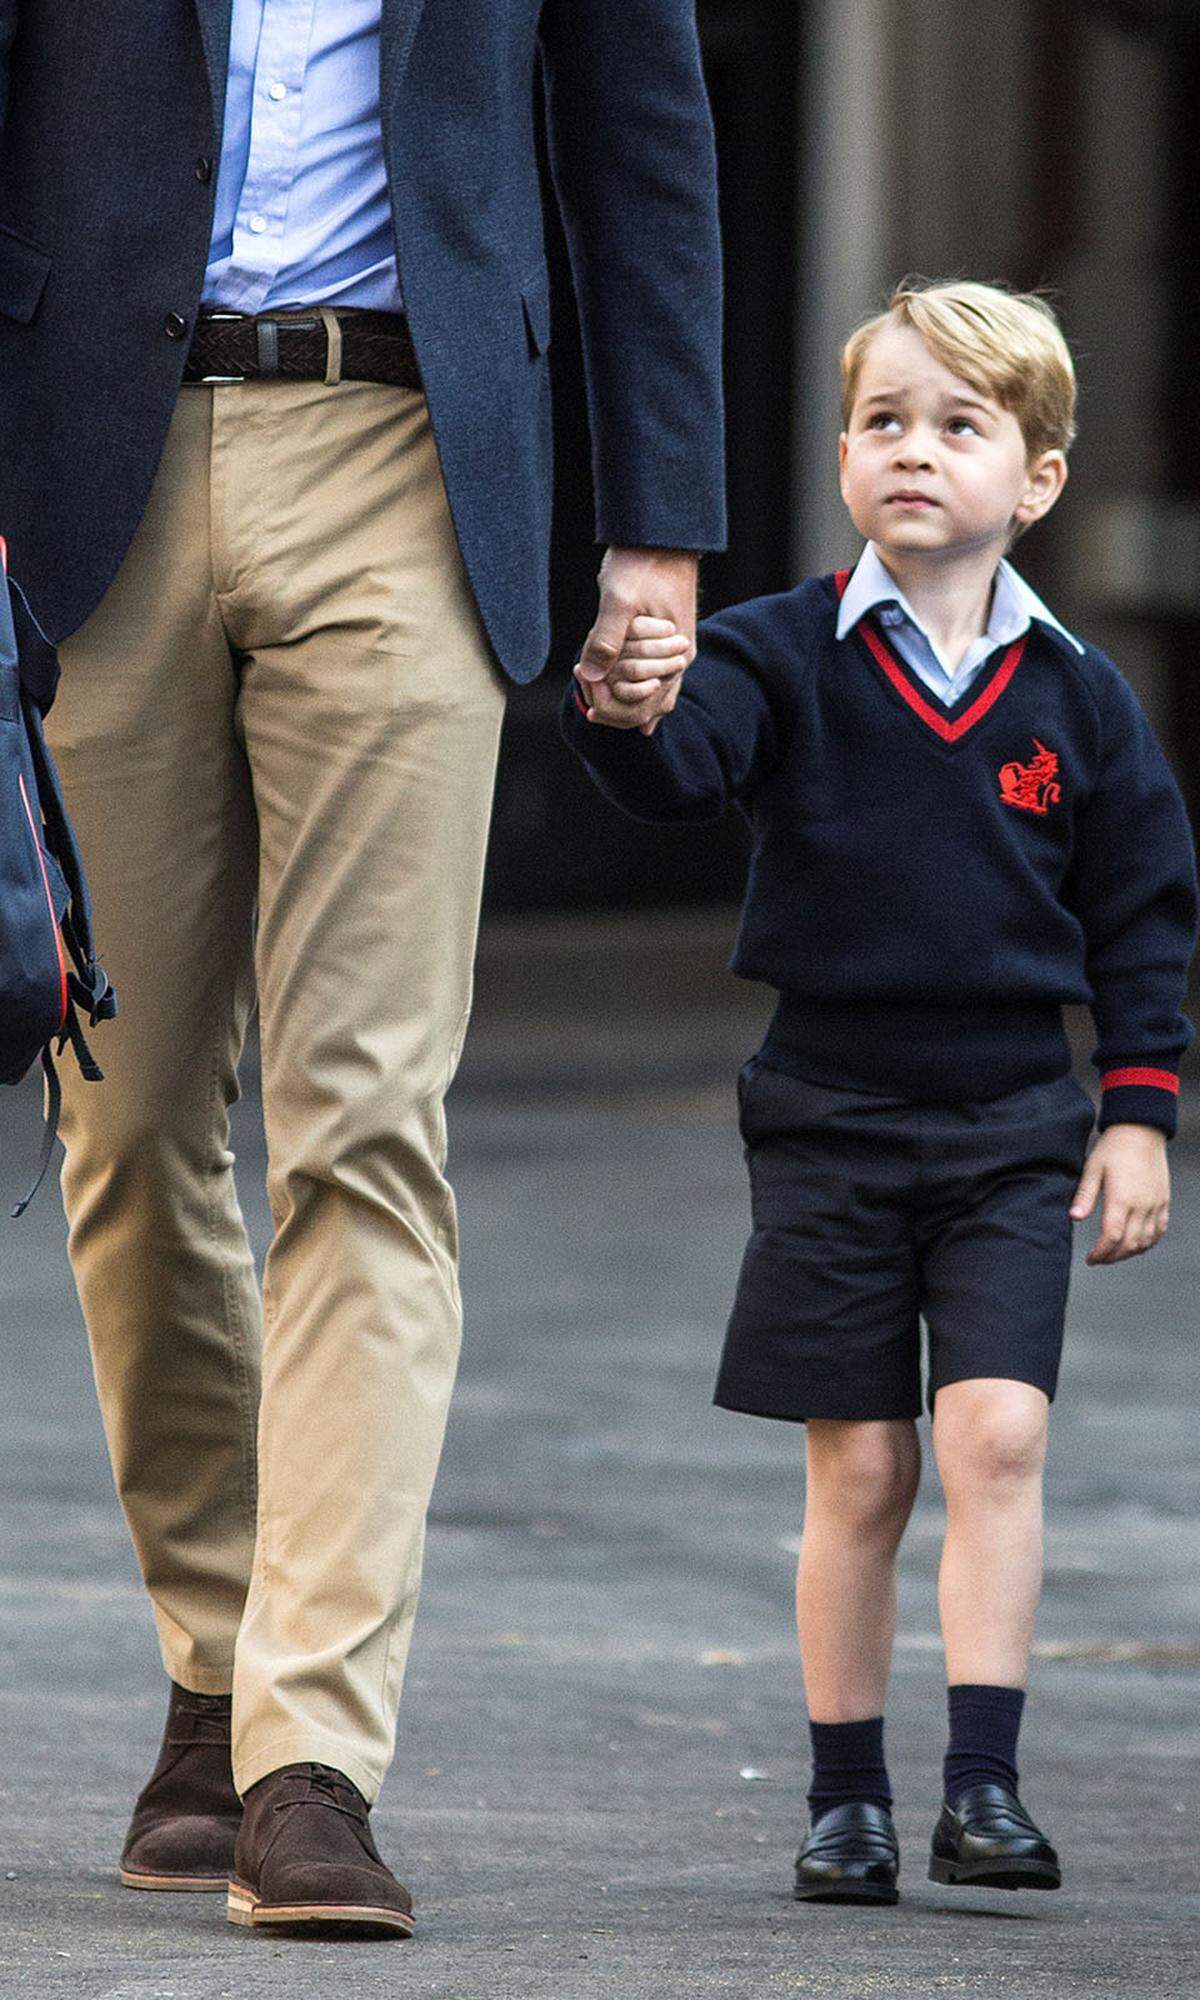 Der Retro-Look mit kurzen Hosen ist für den Vierjährigen so etwas wie seine Uniform. "Lange Hosen sind nur für ältere Jungs und Männer gedacht", weiß der britische Knigge-Experte William Hanson der "Gala" zu berichten. Demnach gibt es eine Altersgrenze, wann Prinzen ihr Beinkleid ändern. Mit acht Jahren gehört es sich für sie, die Shorts einzutauschen.